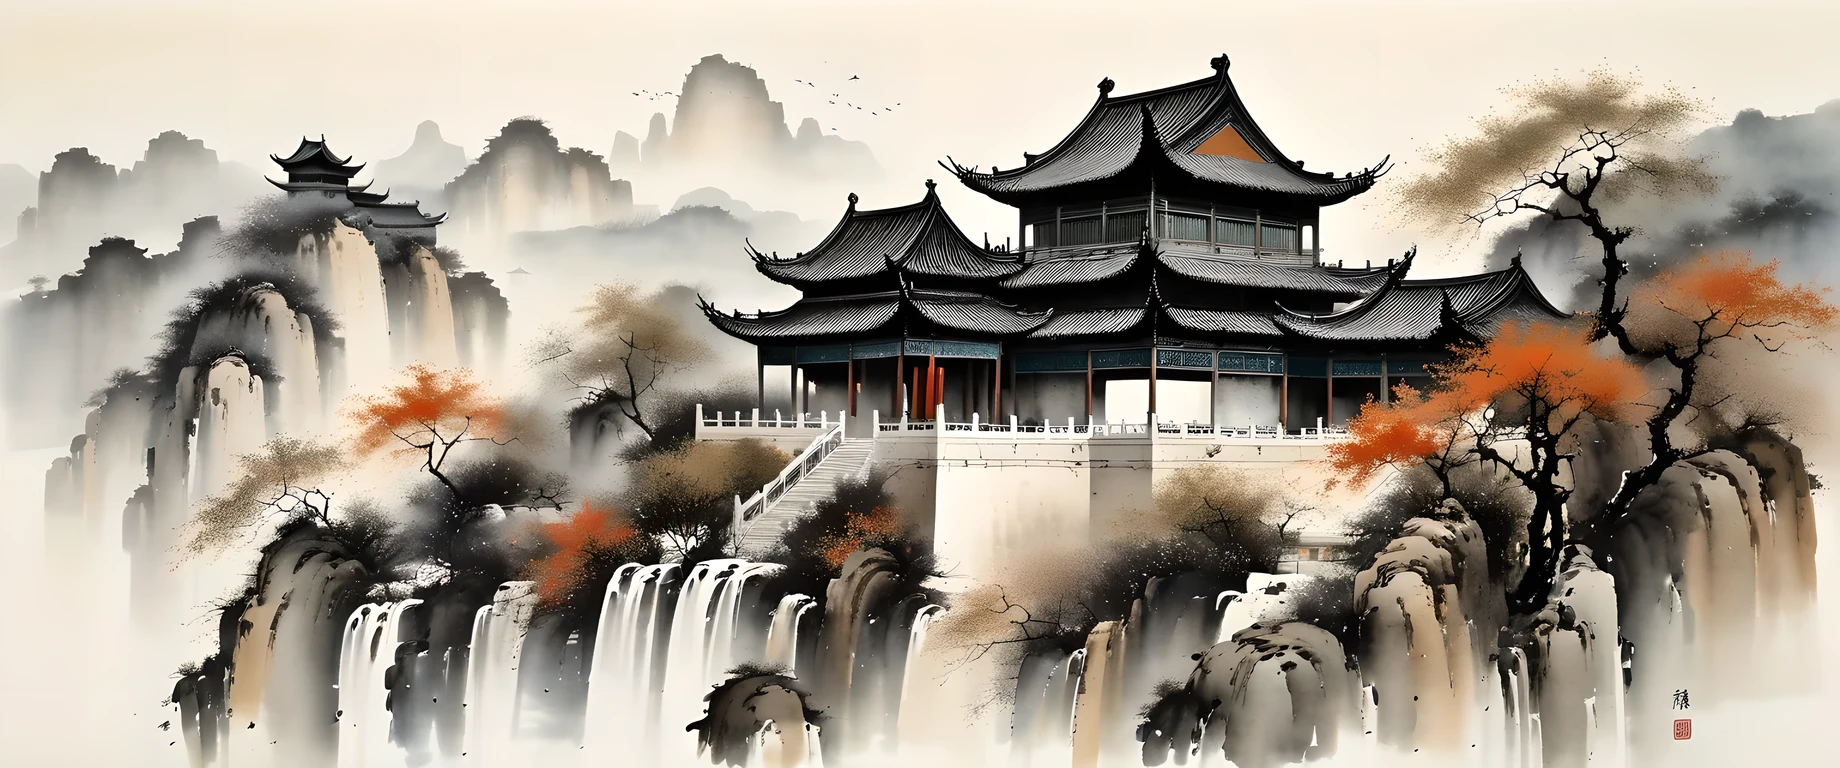 فن الحبر الرائع, حقيقي, العمارة الصينية التفصيلية, أسلوب وو Guanzhong, الألوان الباهتة

